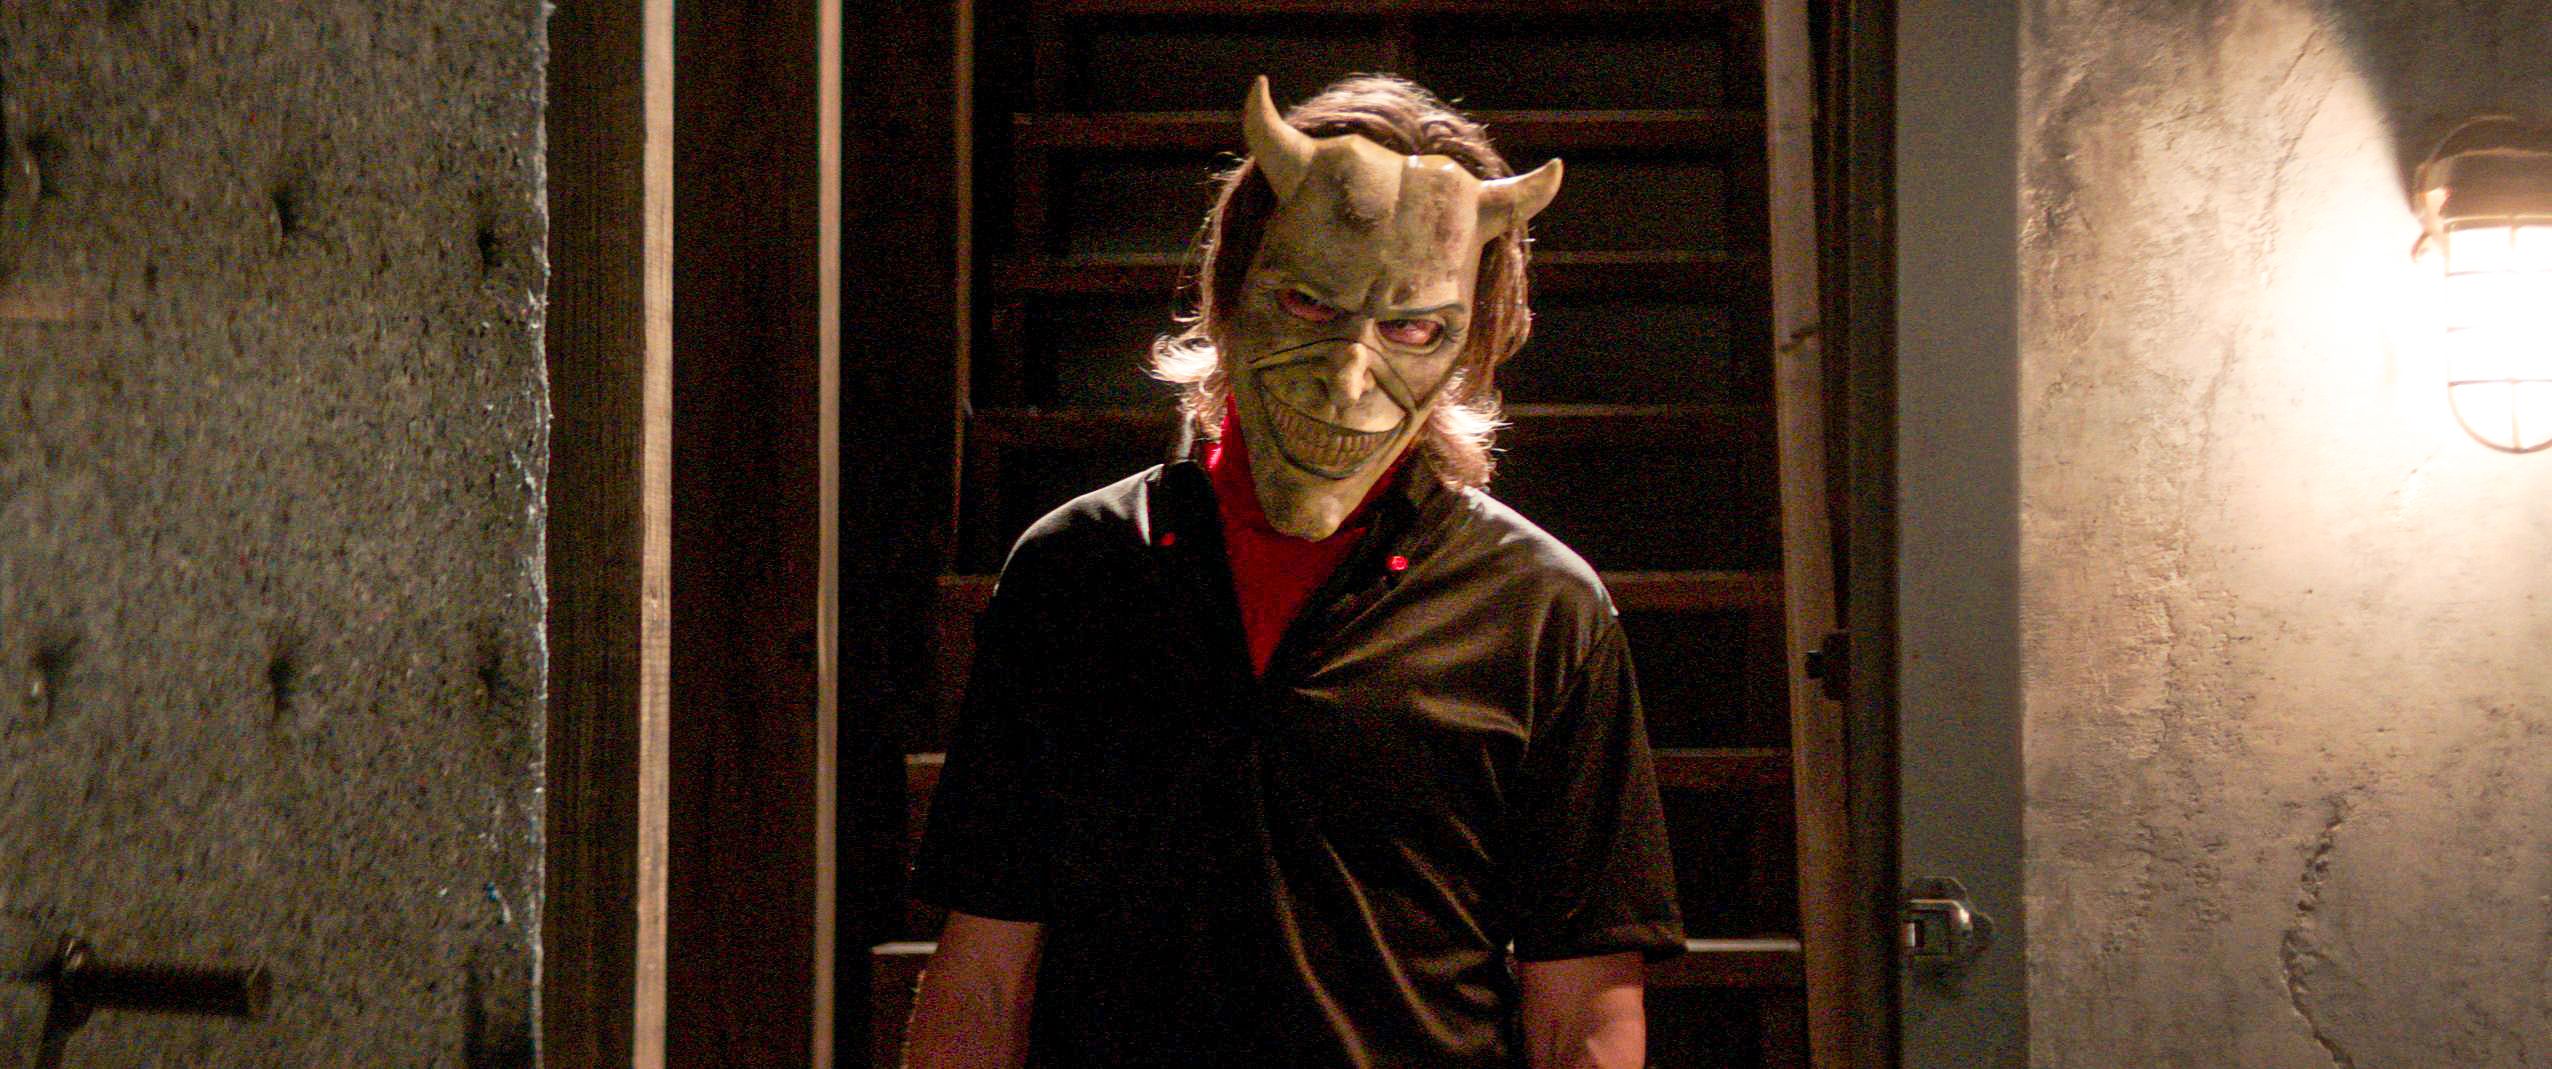  Allas skräck i kvarteret. En maskbeklädd man (Ethan Hawke) som förföljer och kidnappar tonårspojkar. 